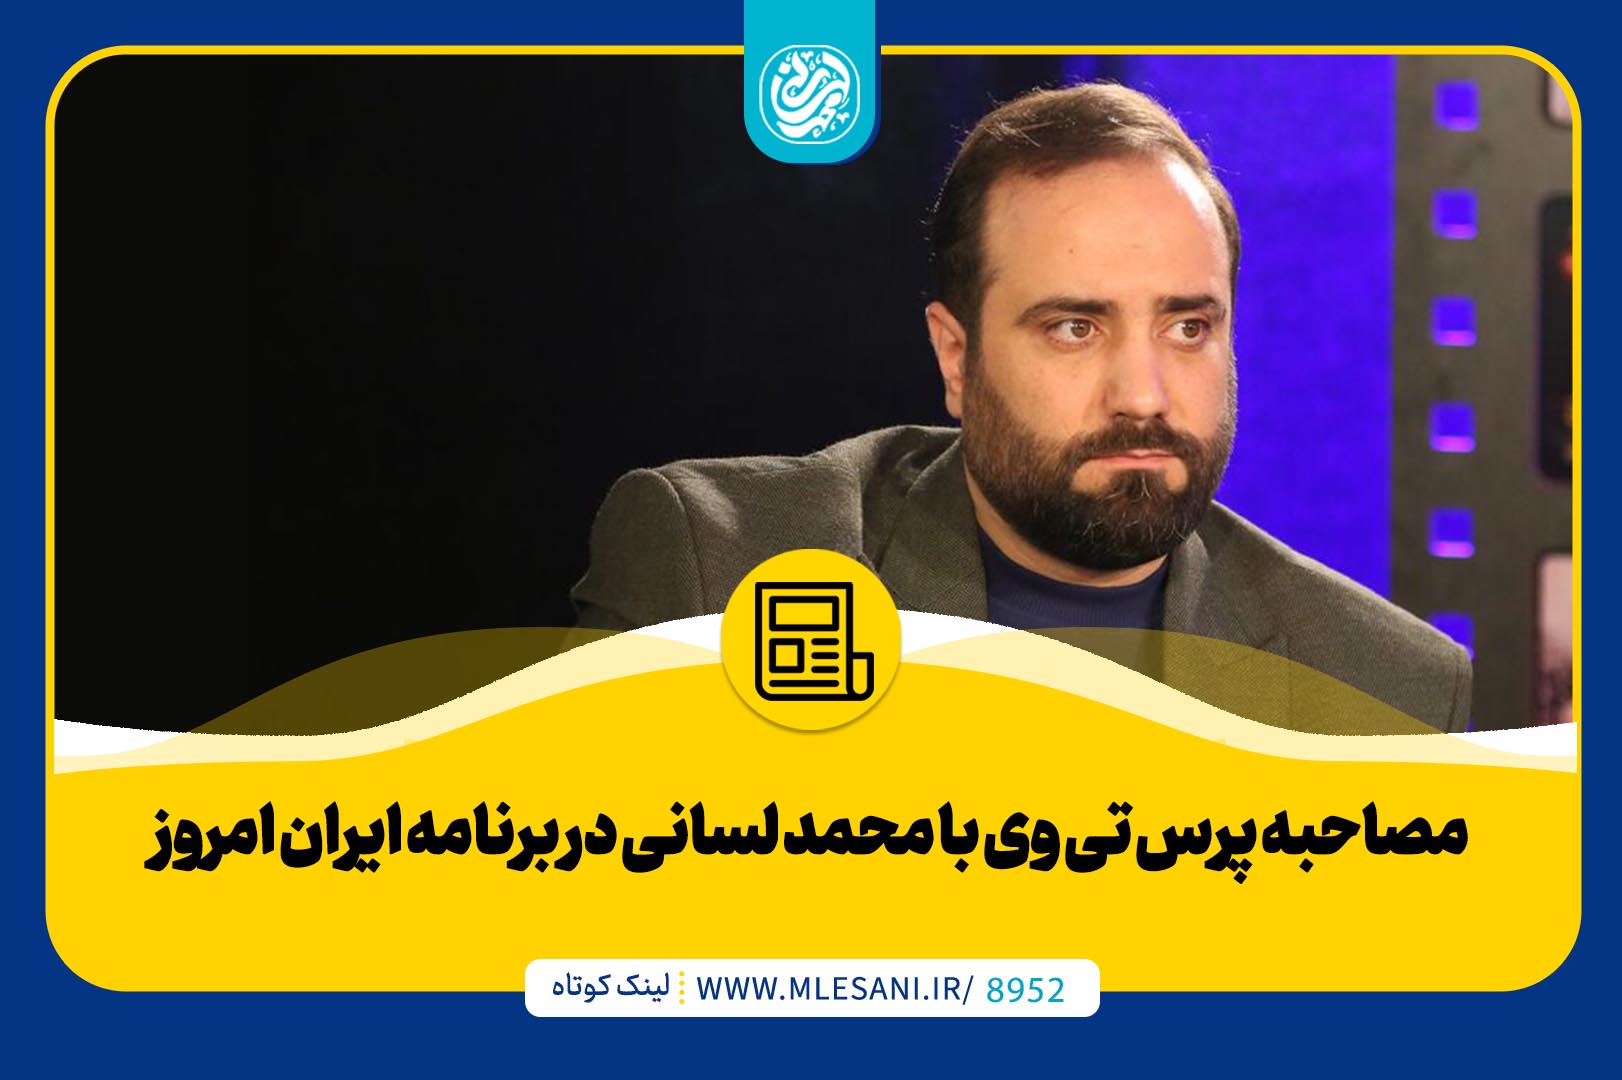 مصاحبه پرس تی وی با محمد لسانی در برنامه ایران امروز